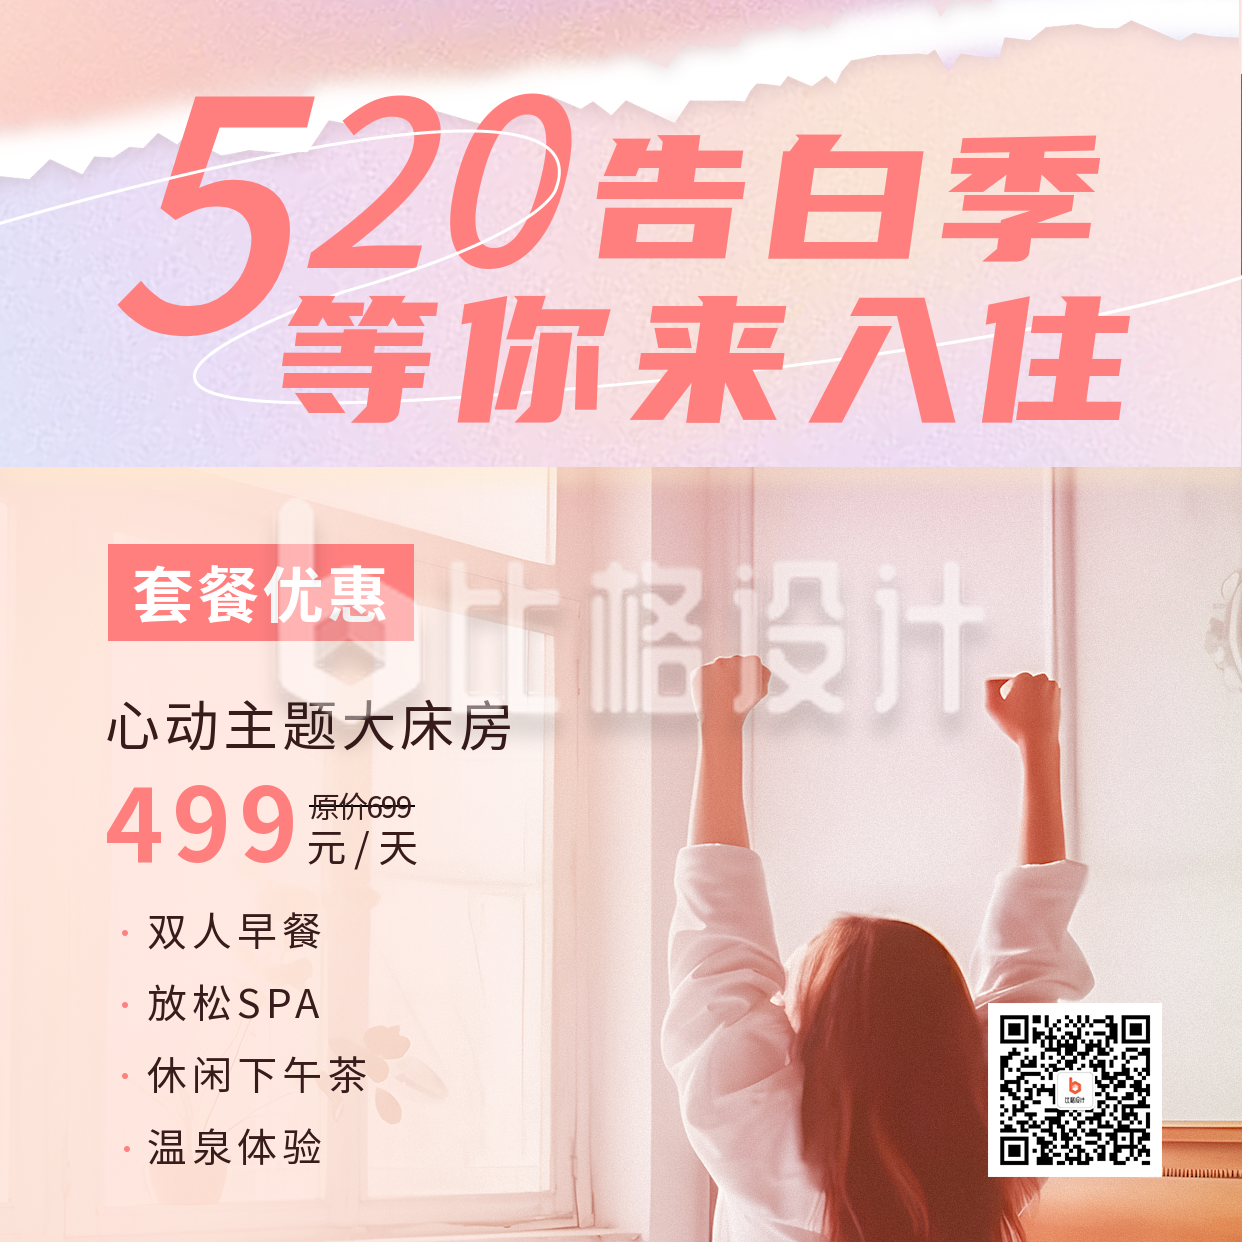 520情人节营销活动选宣传方形海报